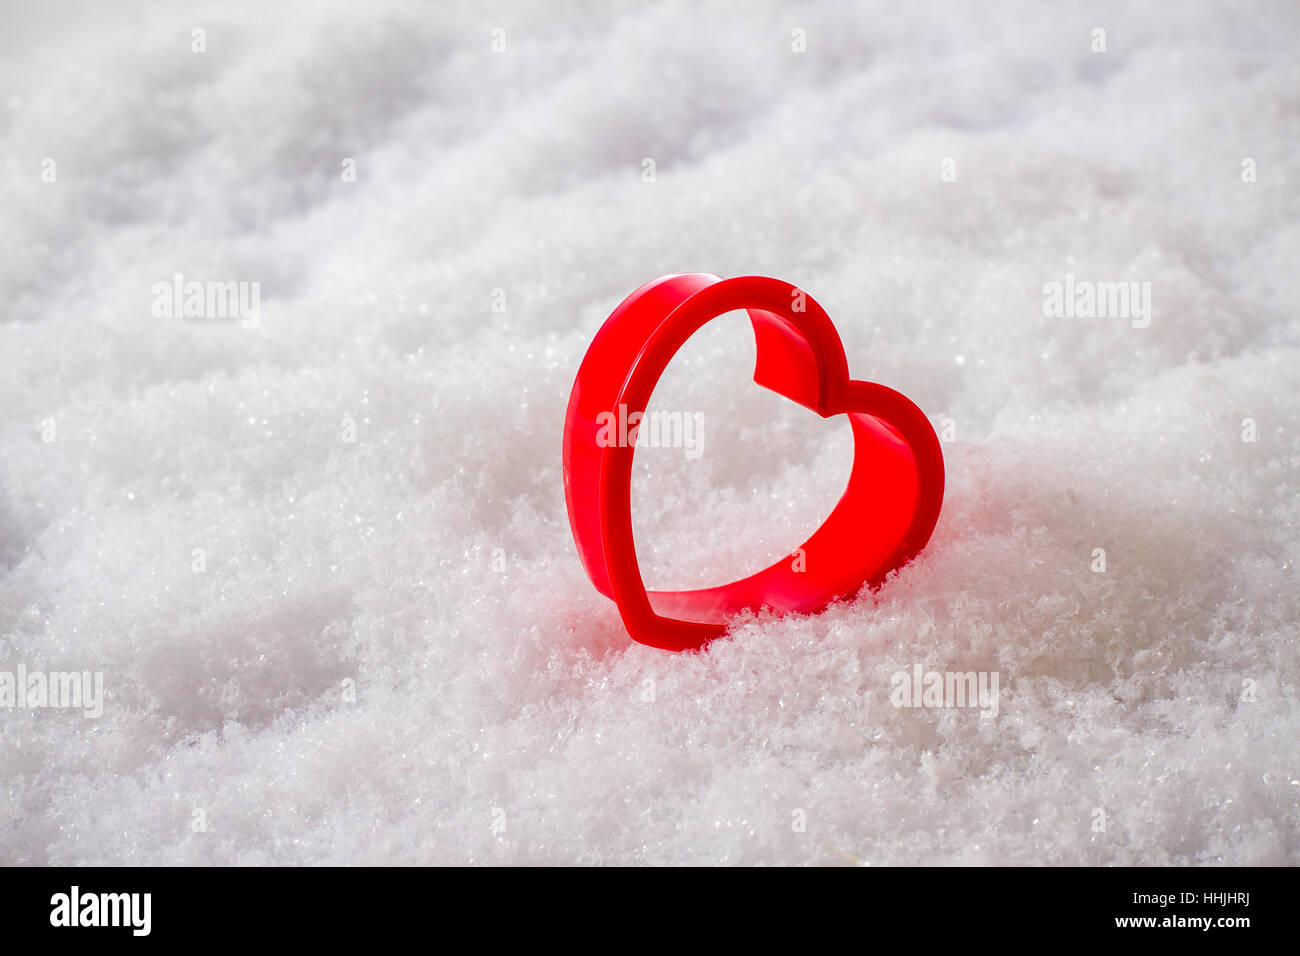 Unico cuore rosso nella neve, vista dall'alto Foto Stock